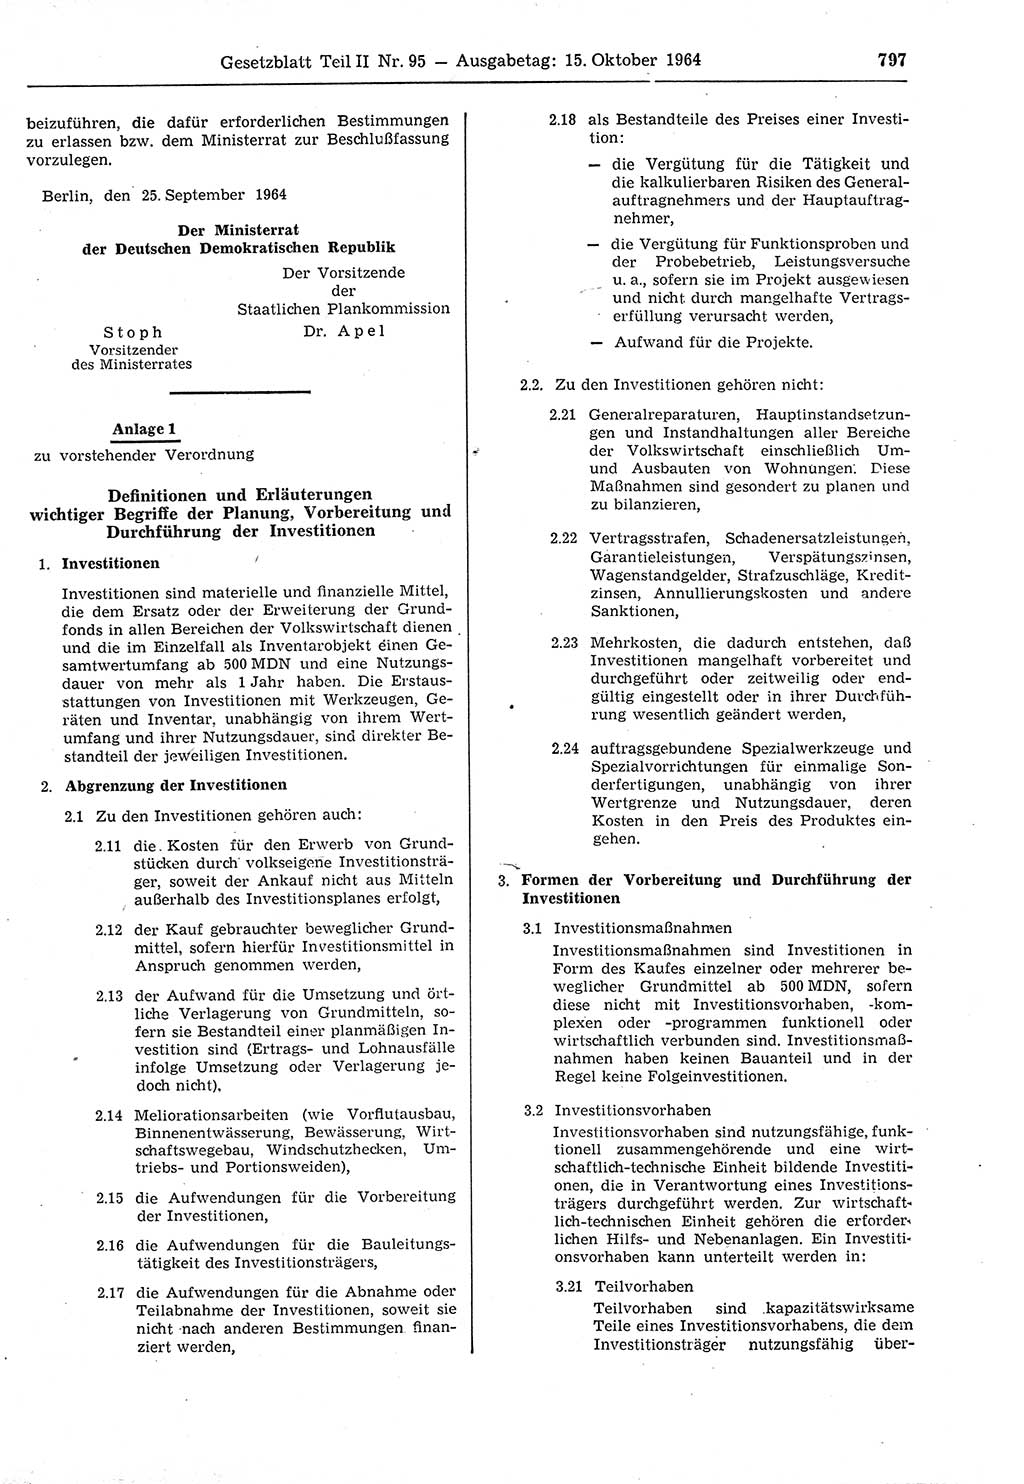 Gesetzblatt (GBl.) der Deutschen Demokratischen Republik (DDR) Teil ⅠⅠ 1964, Seite 797 (GBl. DDR ⅠⅠ 1964, S. 797)